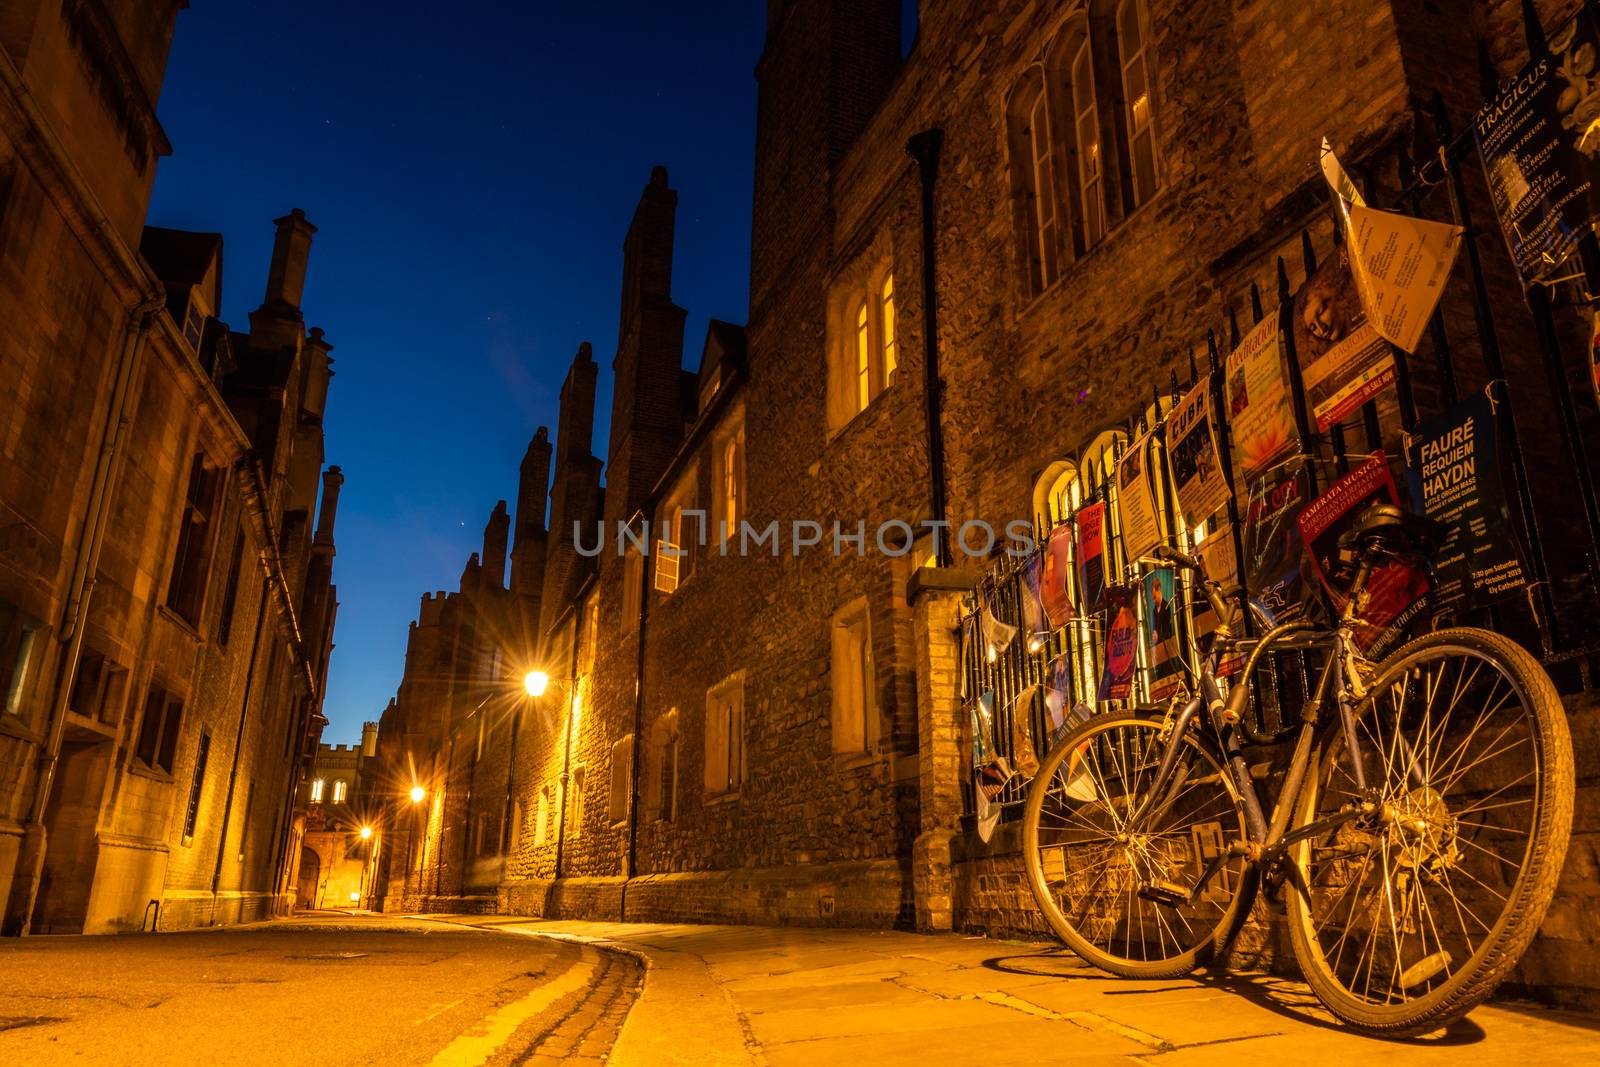 An empty Trinity Lane by night, Cambridge, United Kingdom by mauricallari